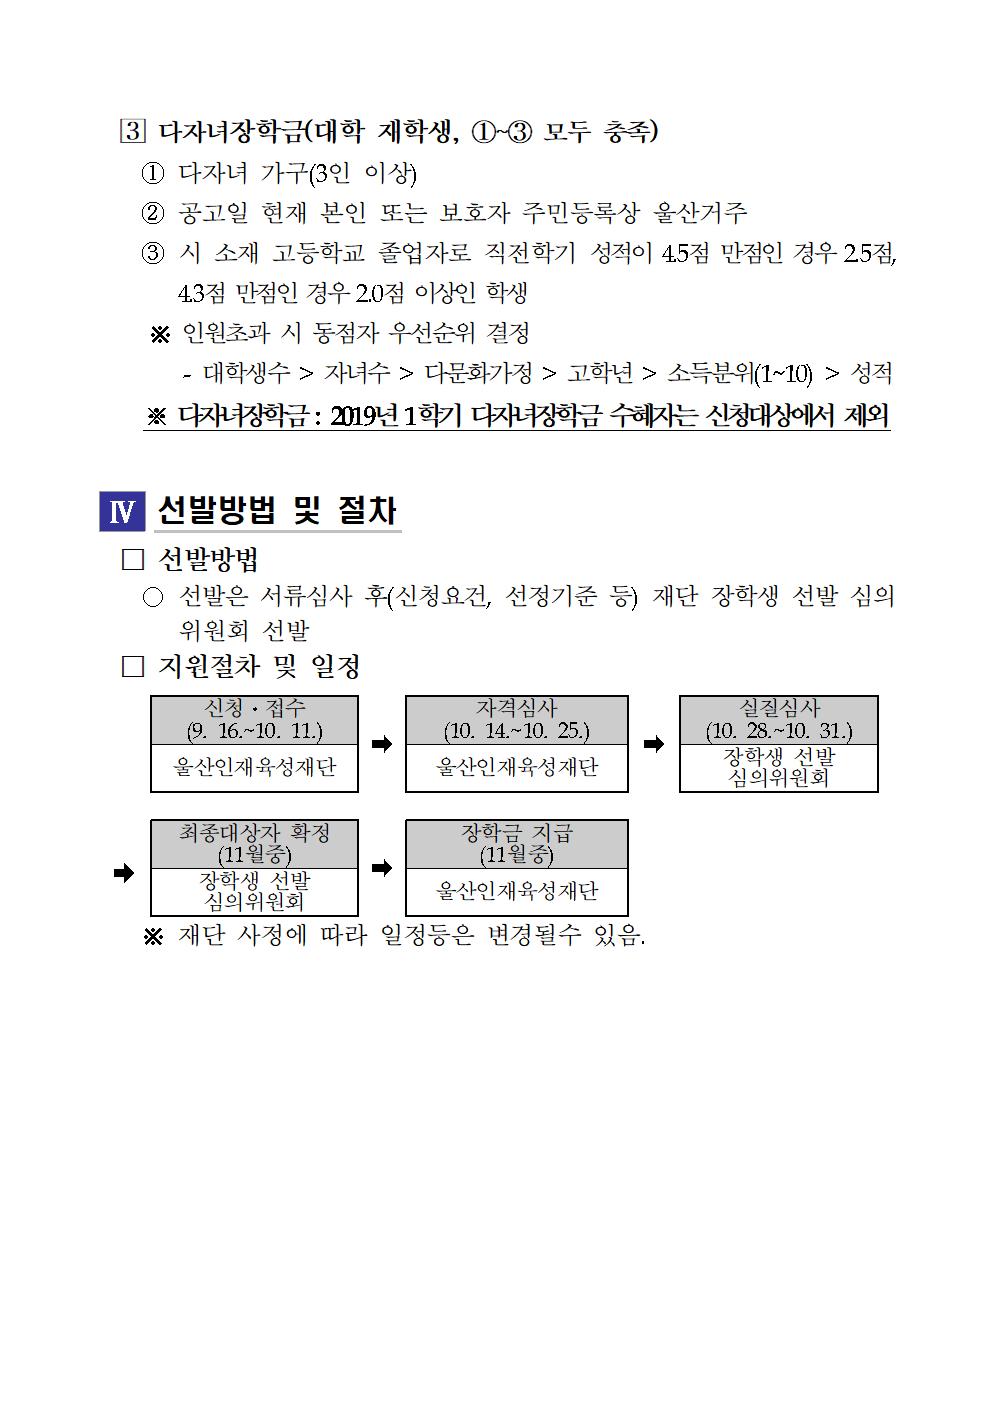 2019-2 재단법인 울산인재육성재단 장학생 선발계획 안내